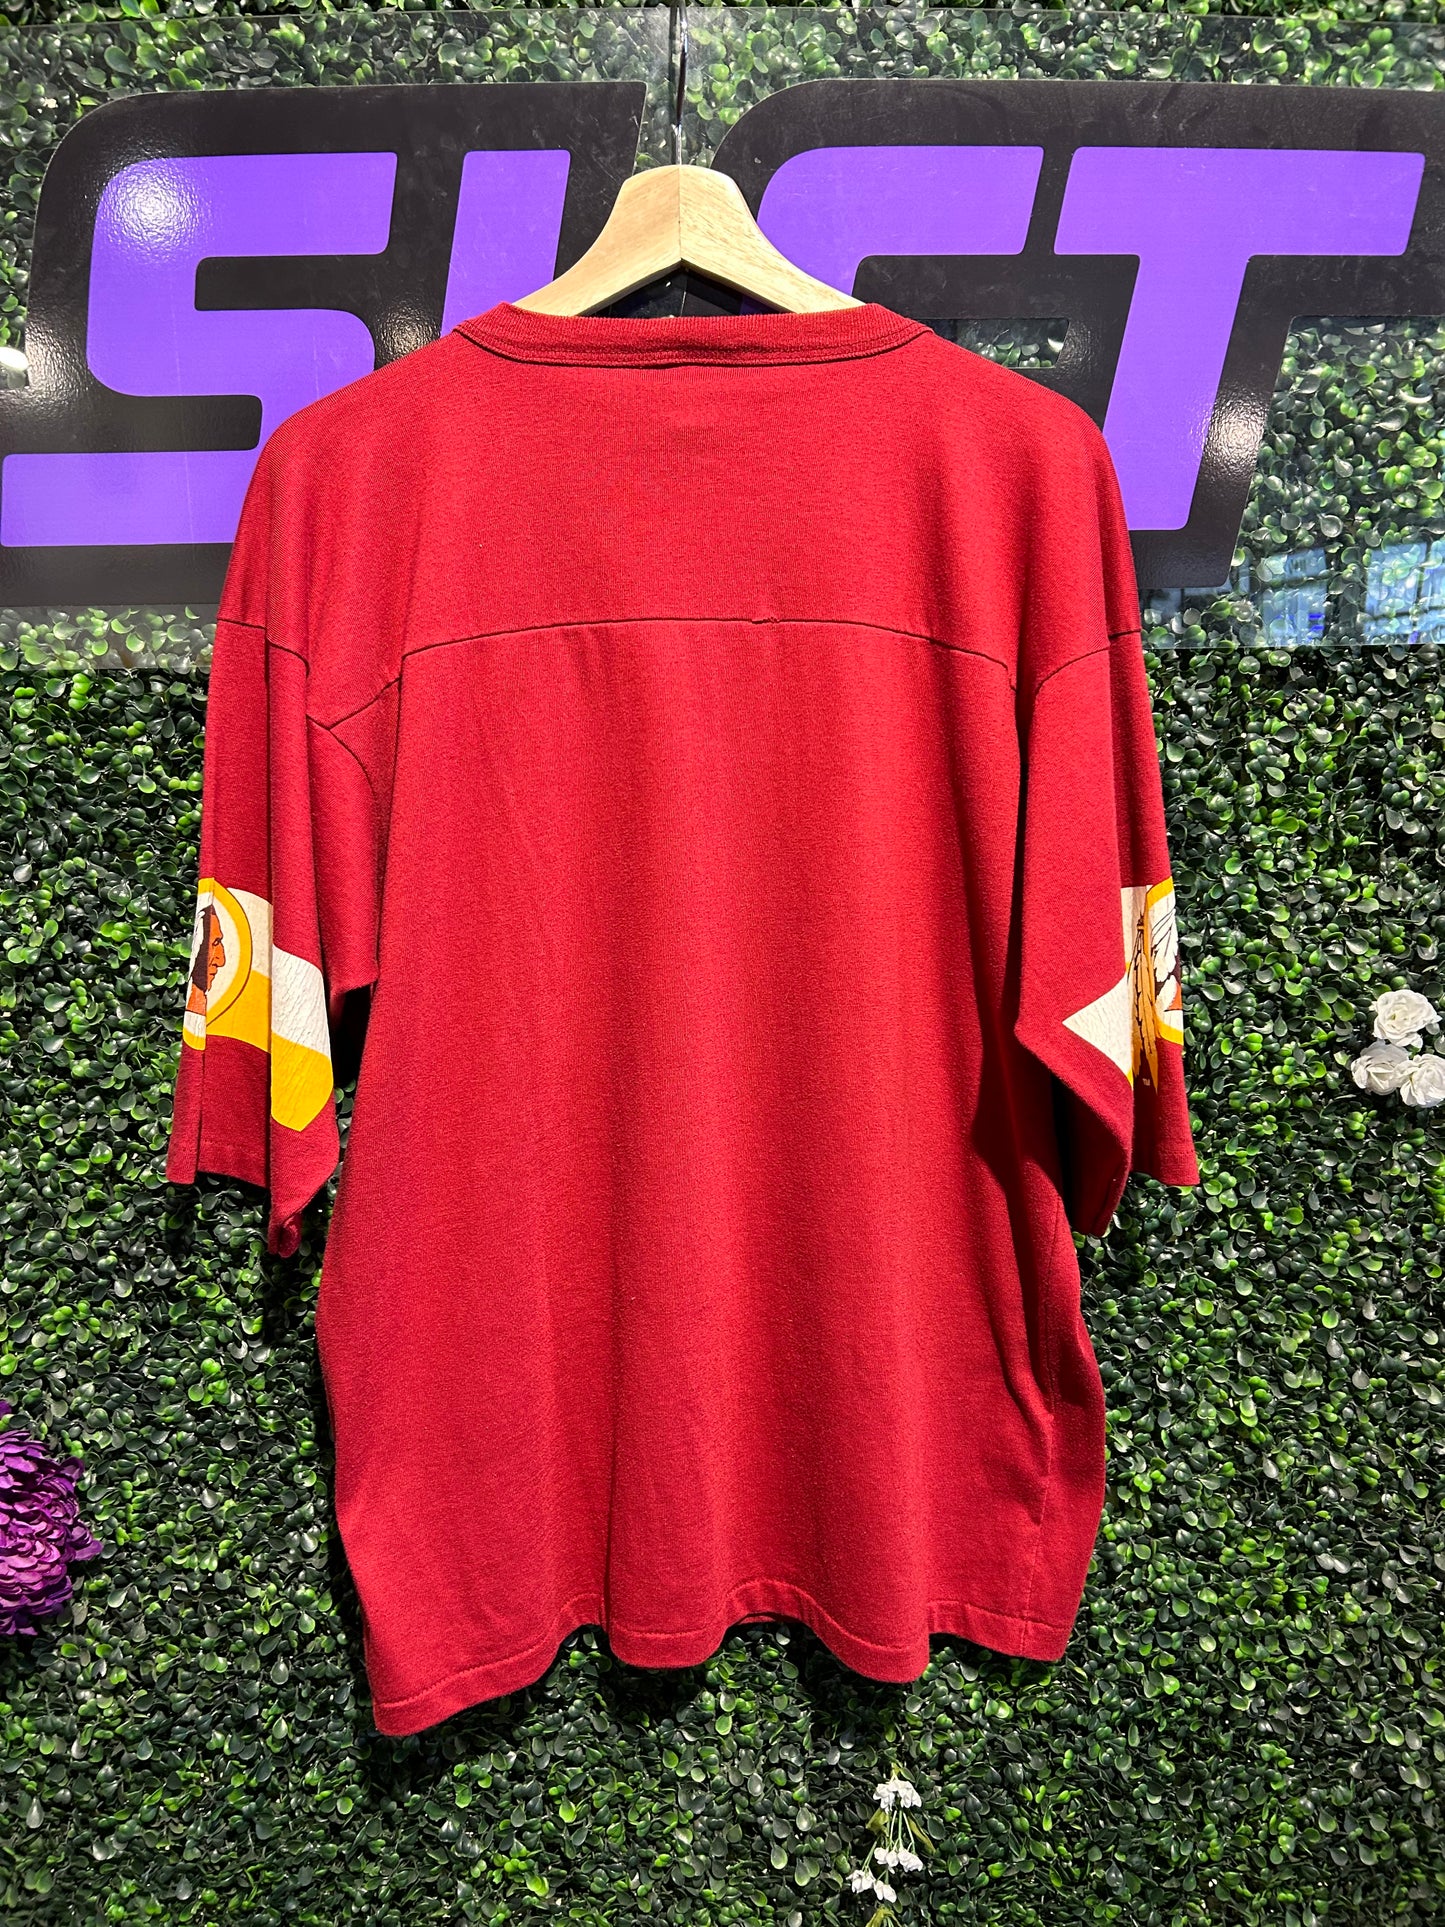 90s Washington Redskins 3/4 Sleeve Jersey Shirt. Size Large